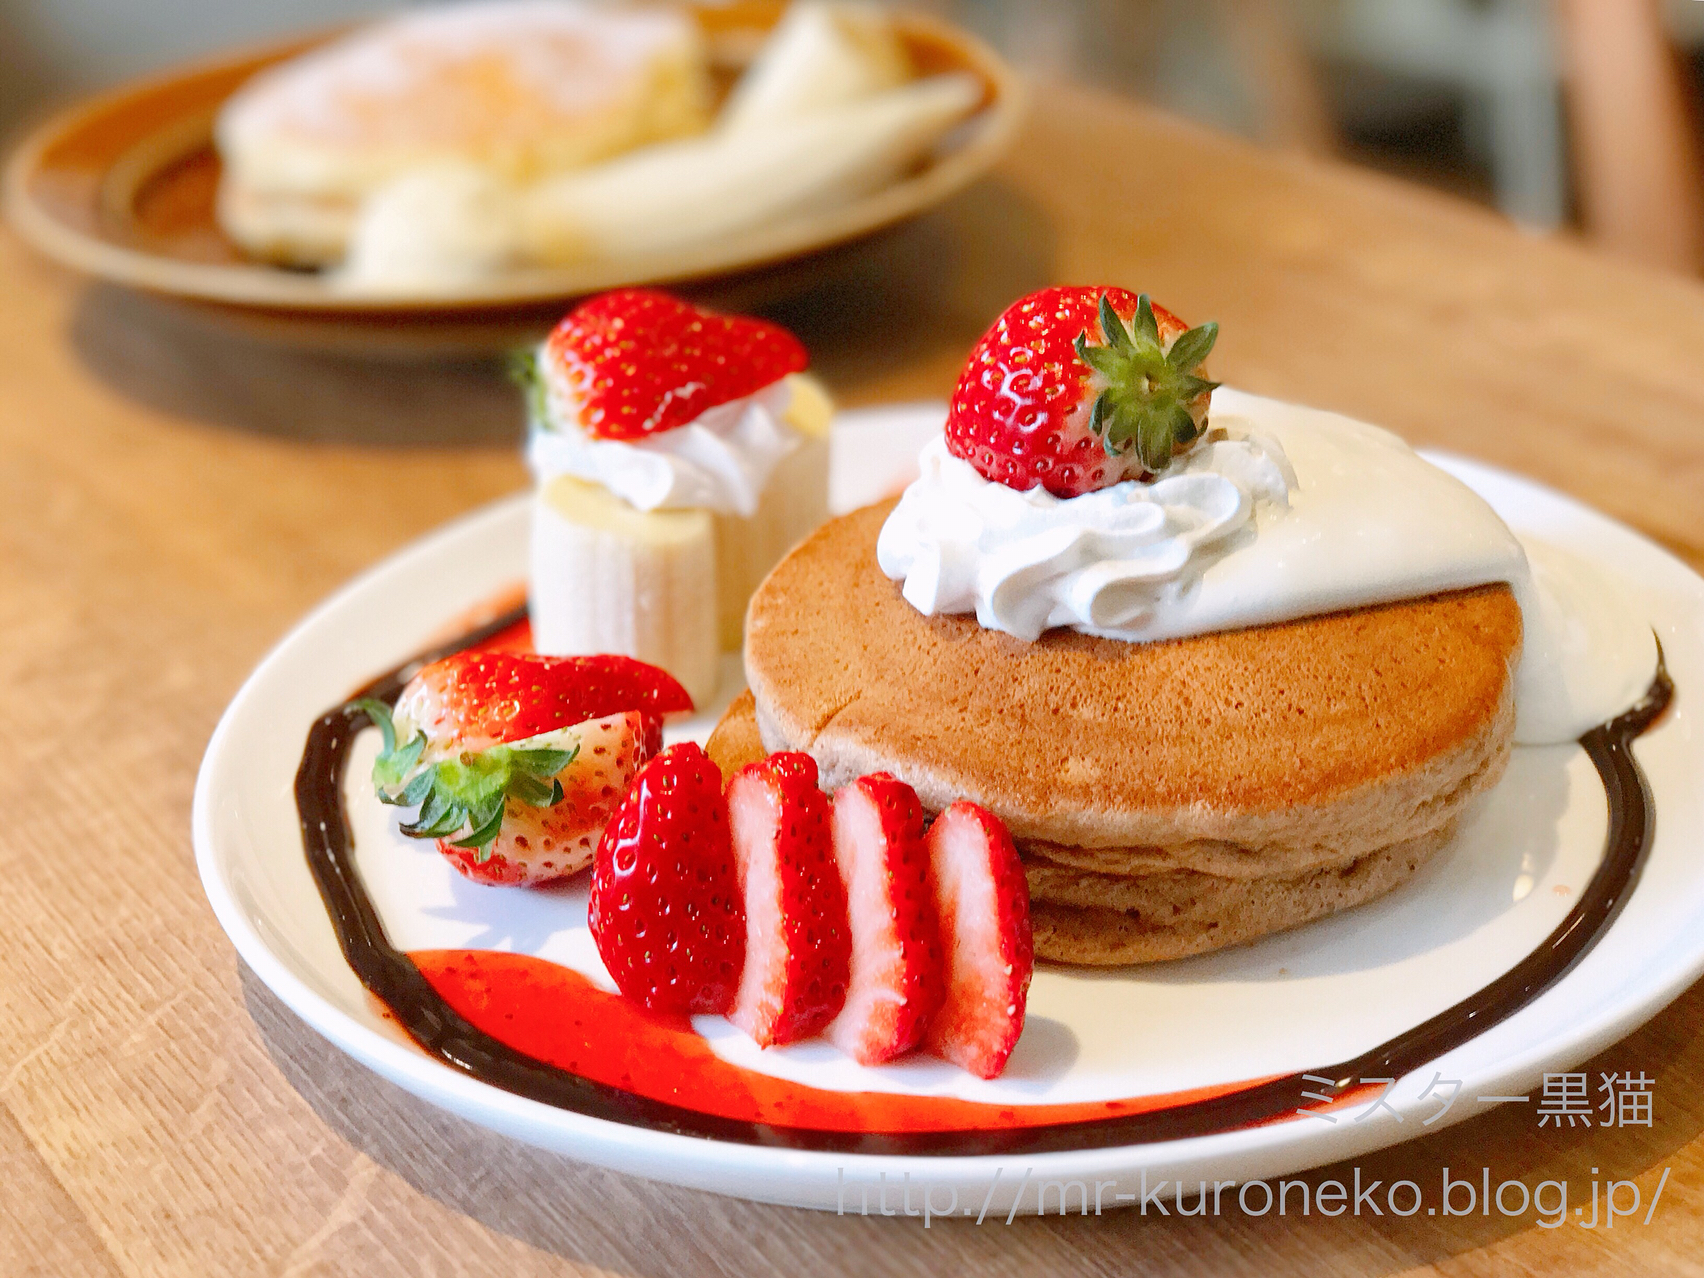 Fuku Cafe 福カフェ 入谷 チョコレートパンケーキ リコッタパンケーキ ミスター黒猫のカフェめぐり パンケーキを日本一実食